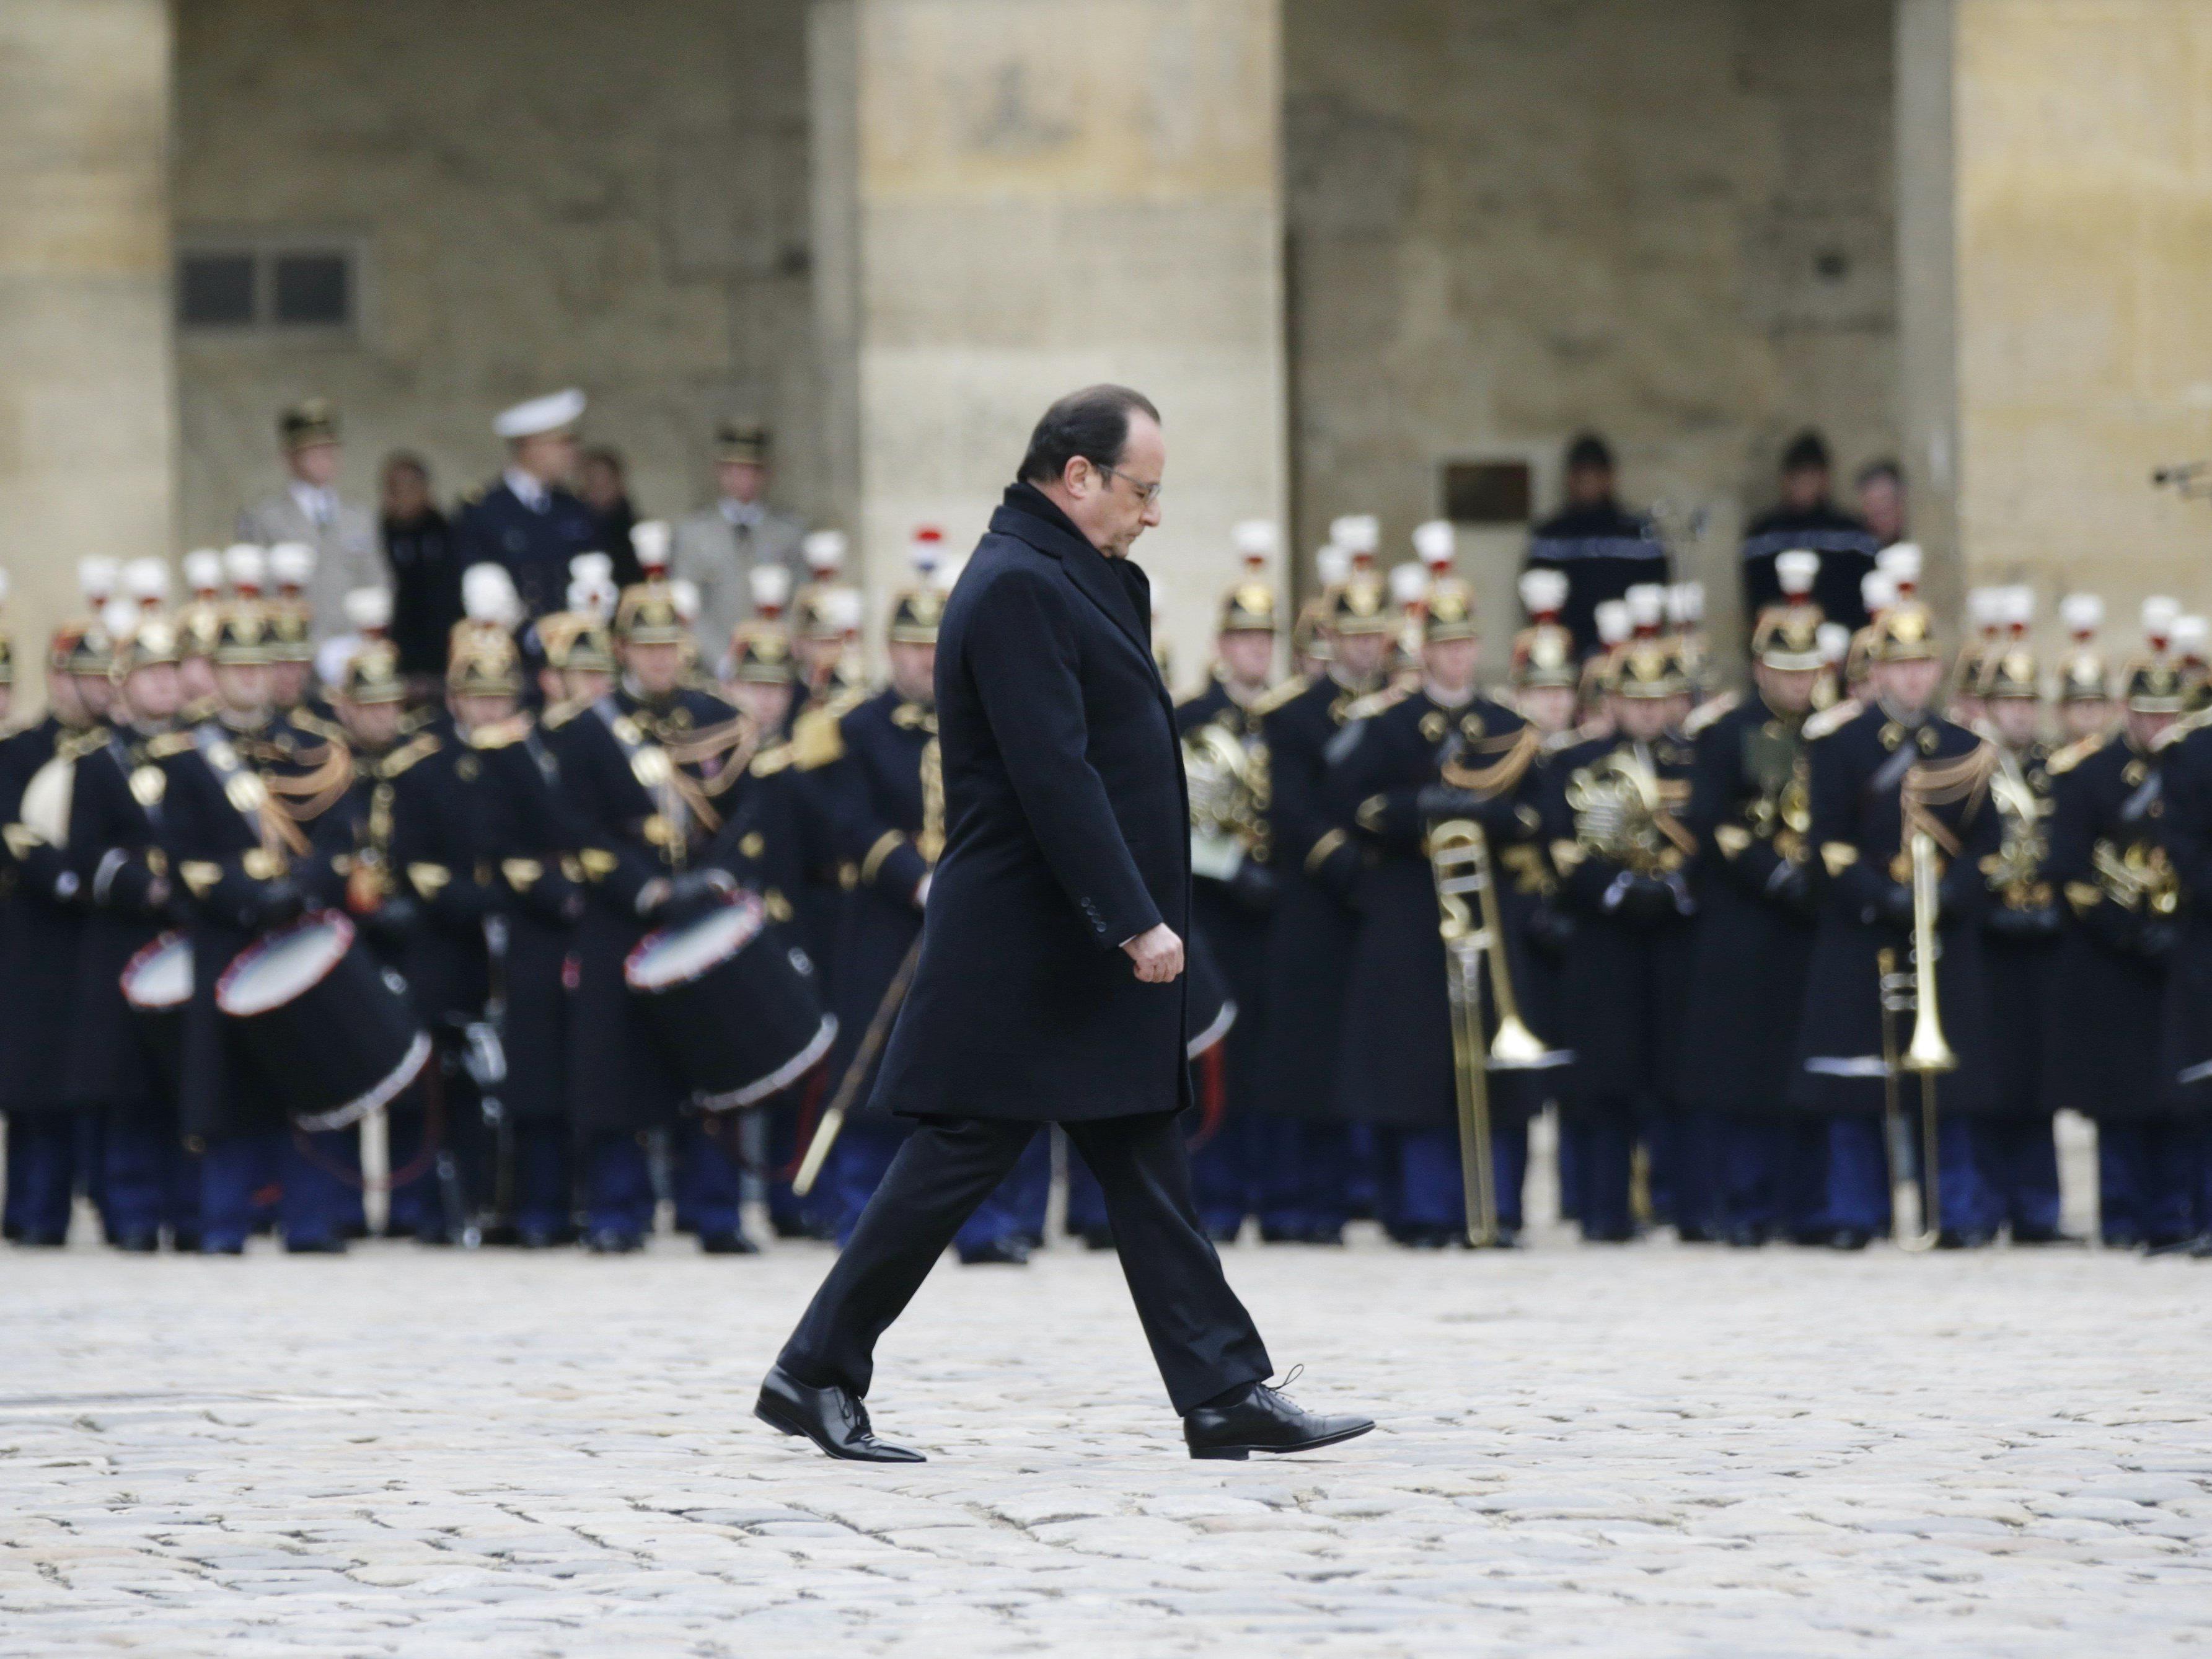 Frankreich trauert um die Terroropfer vom 13. November 2015